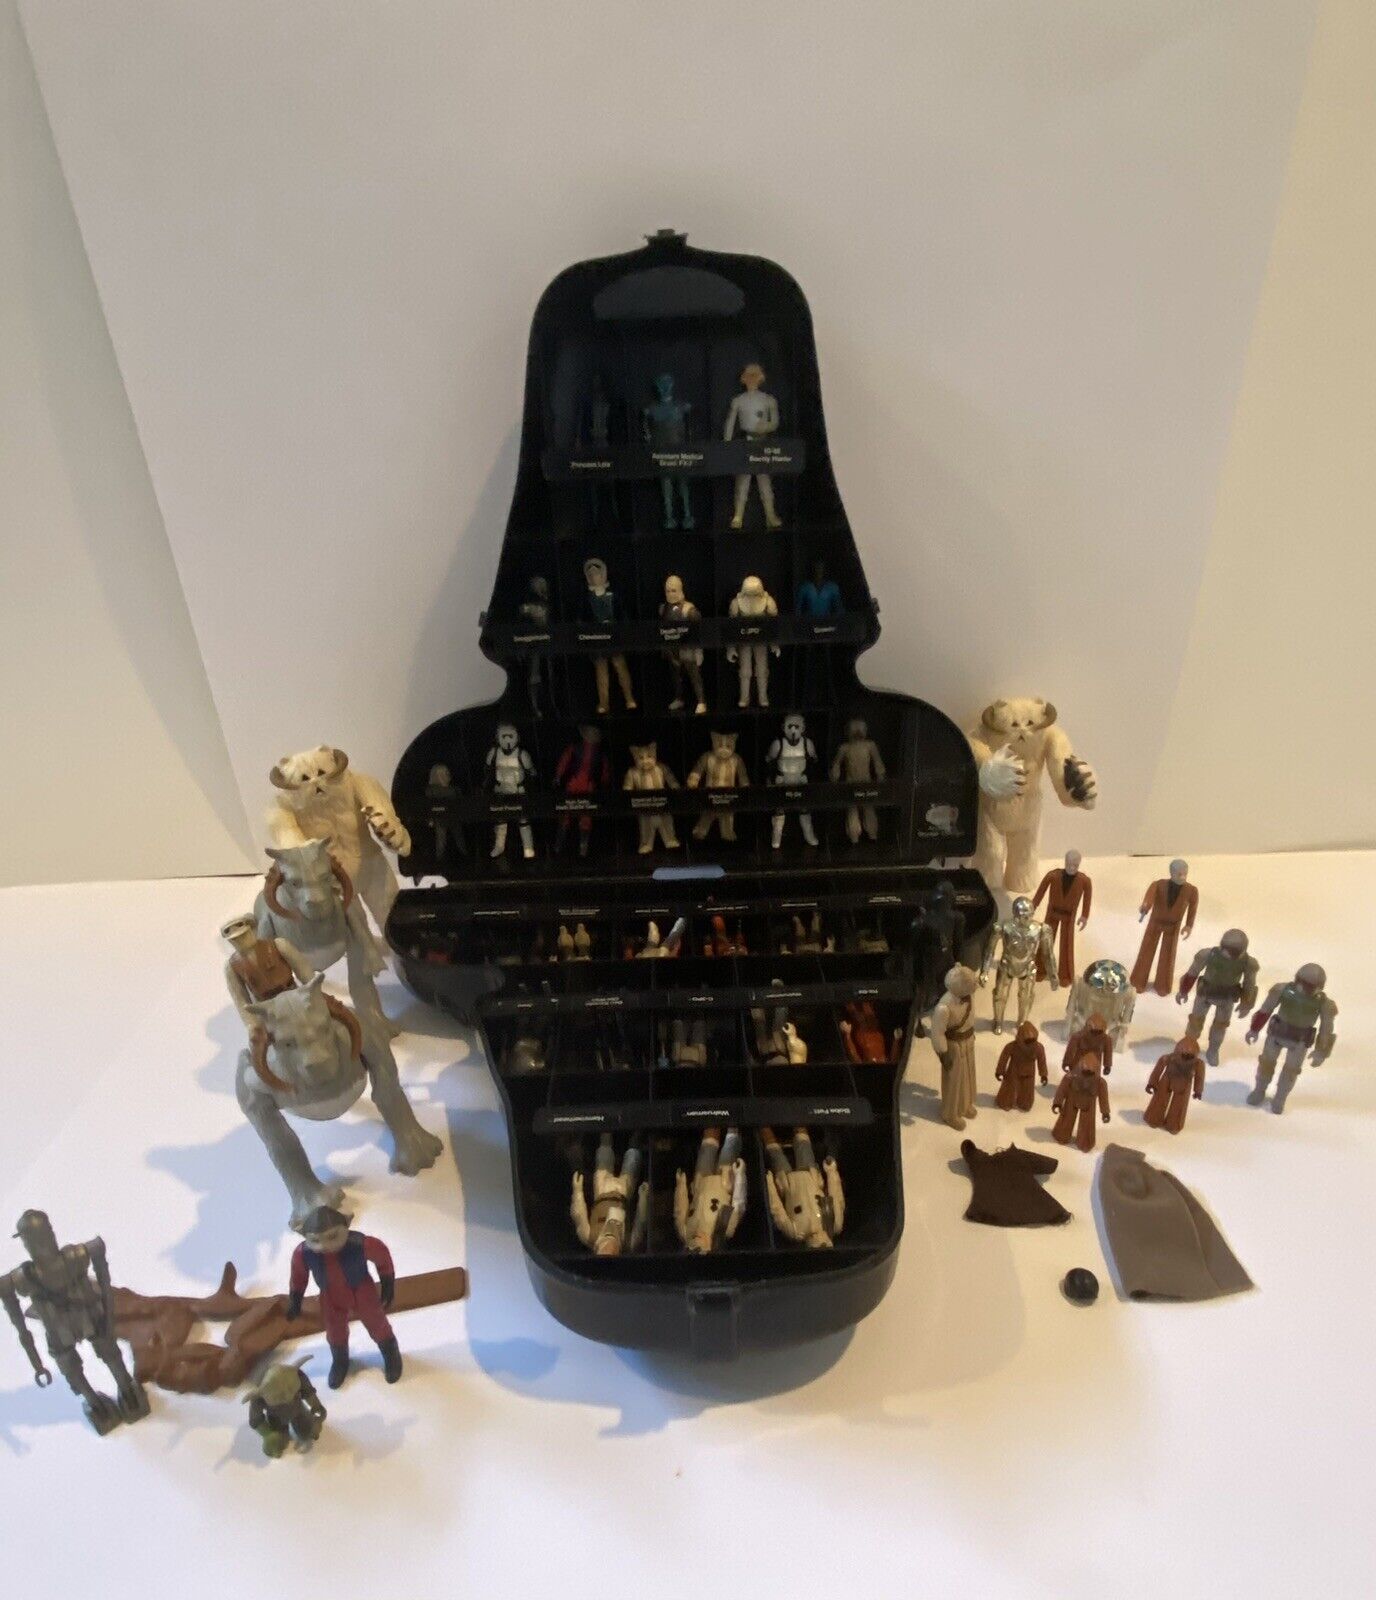 51 Piece Vintage Star Wars Collection W/ Darth Vader Case (1977-80s)